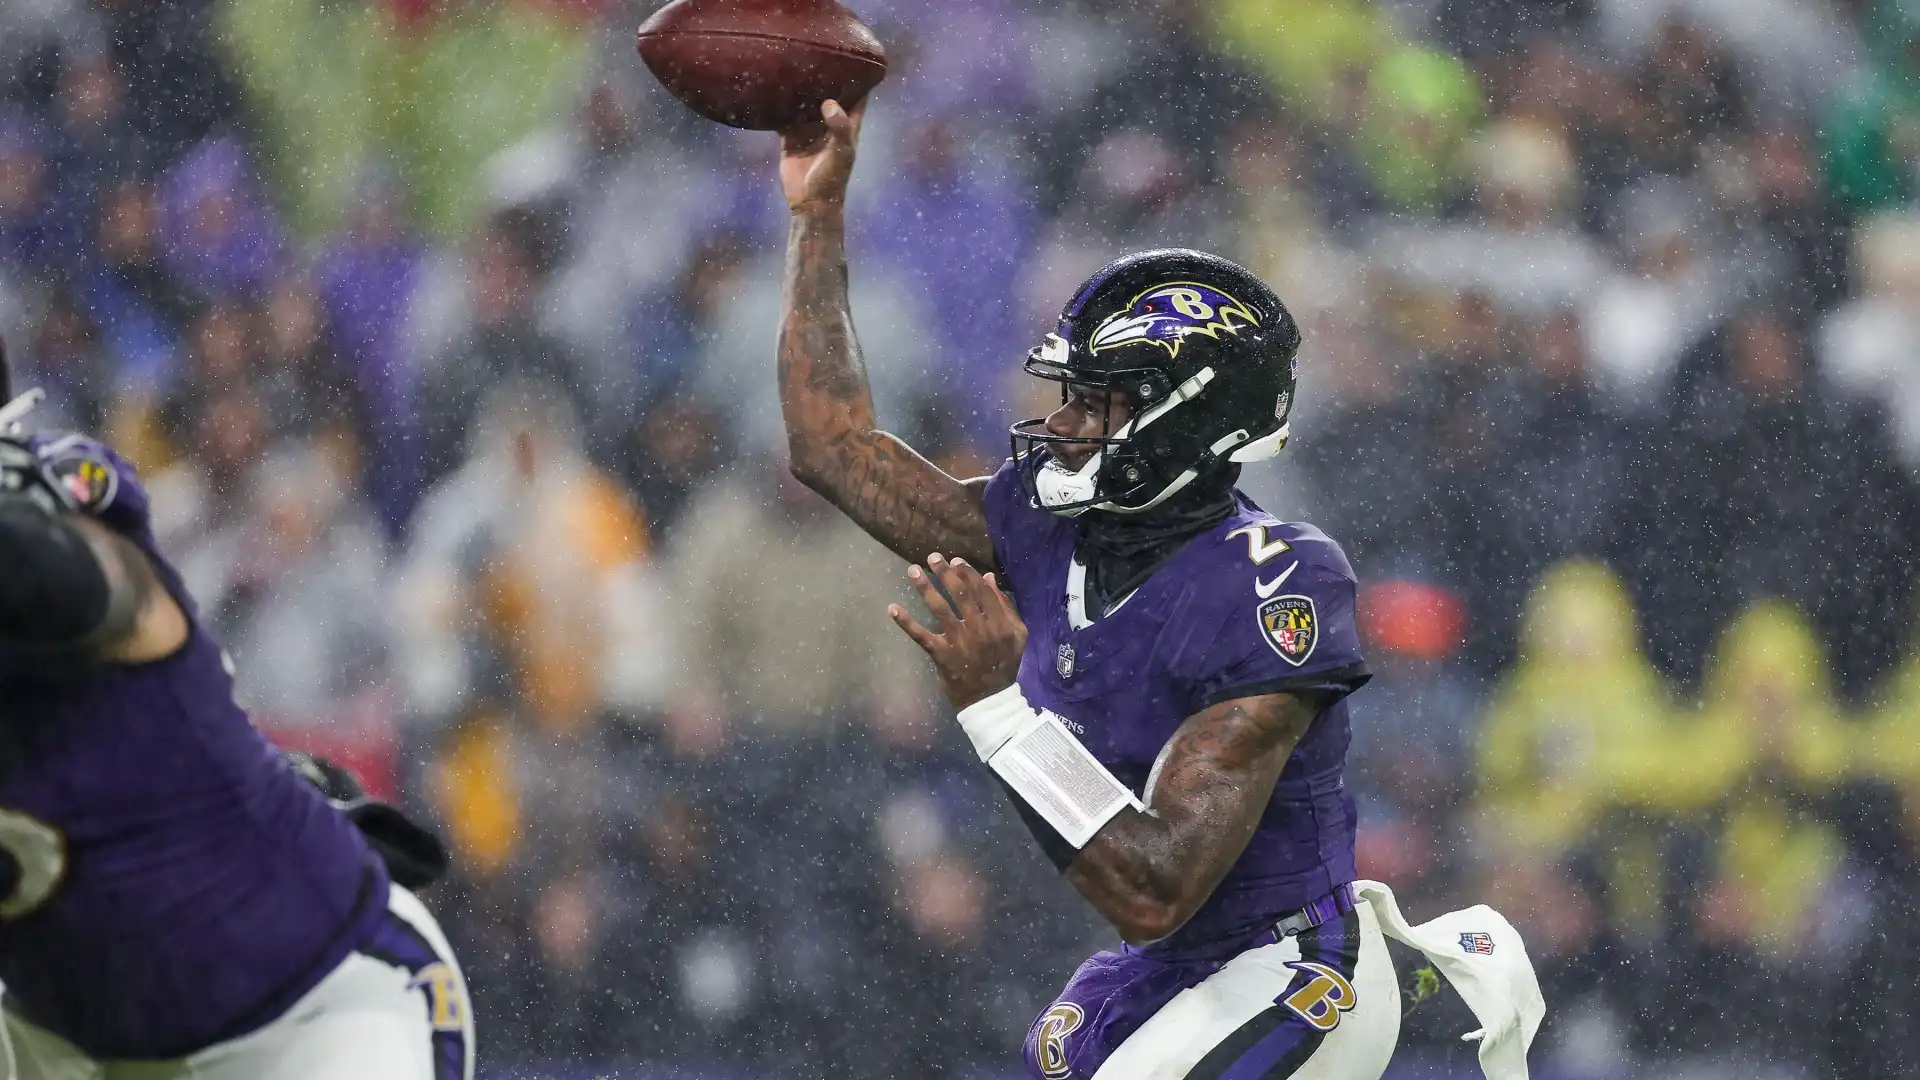 Ravens vs Chiefs: Jackson vs Mahomes for Super Bowl 58 Spot - LIVE Updates